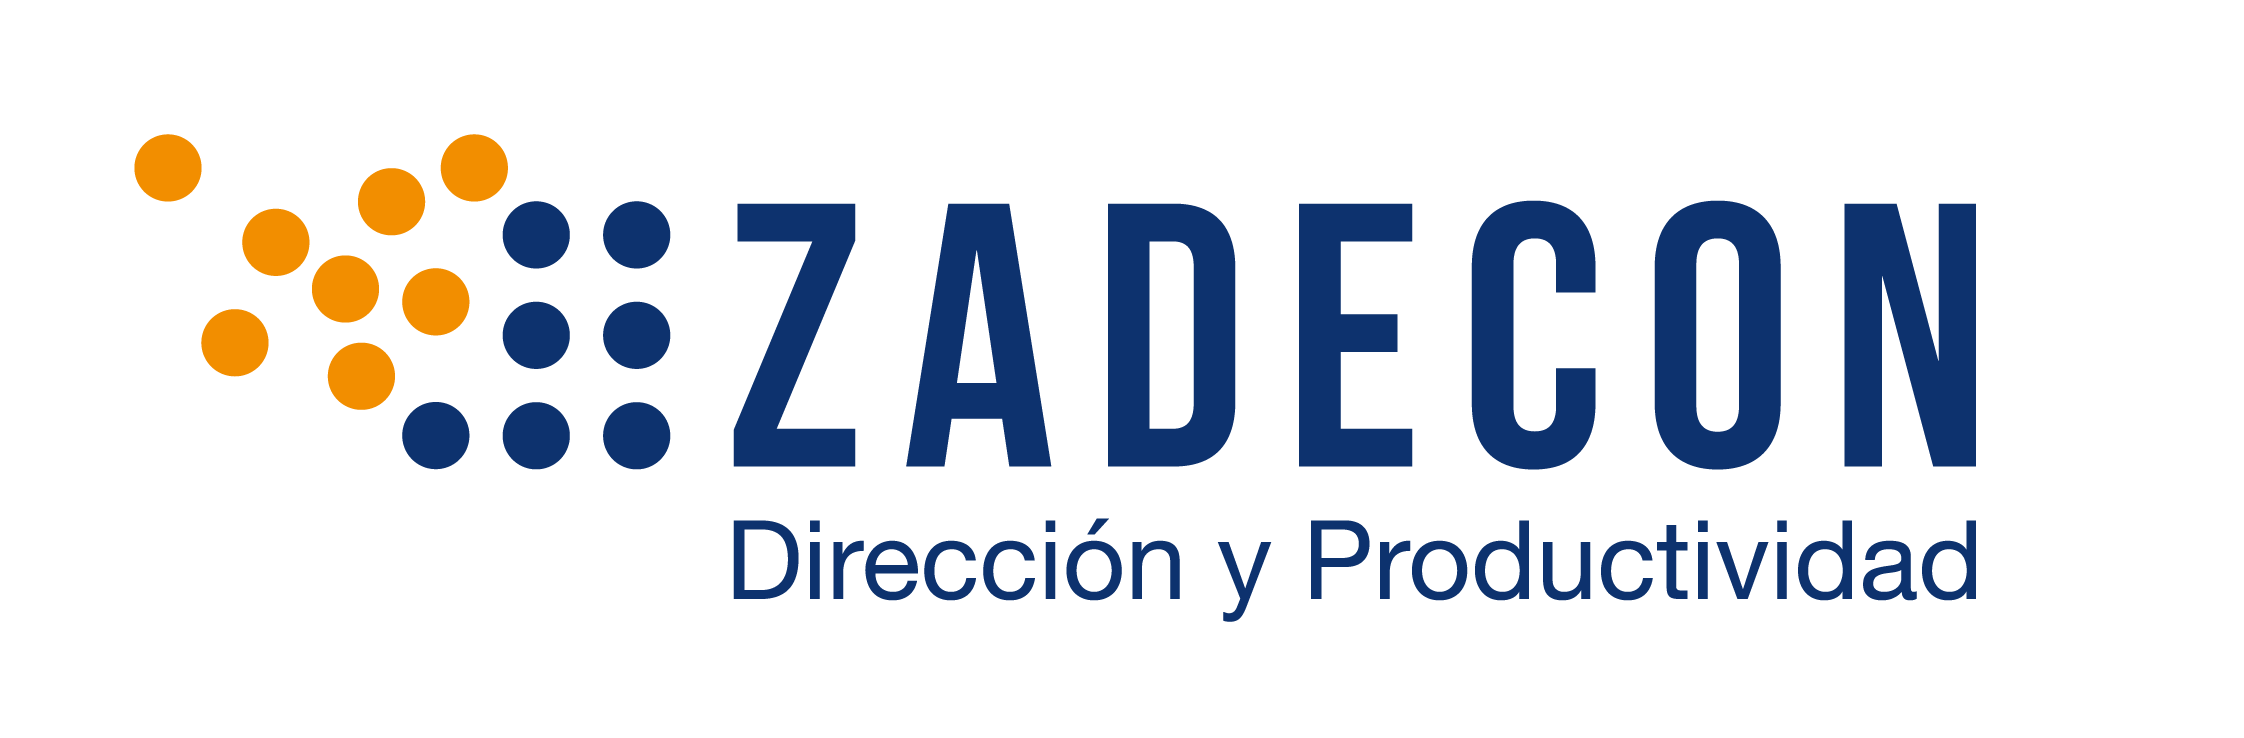 Blog Zadecon Logo